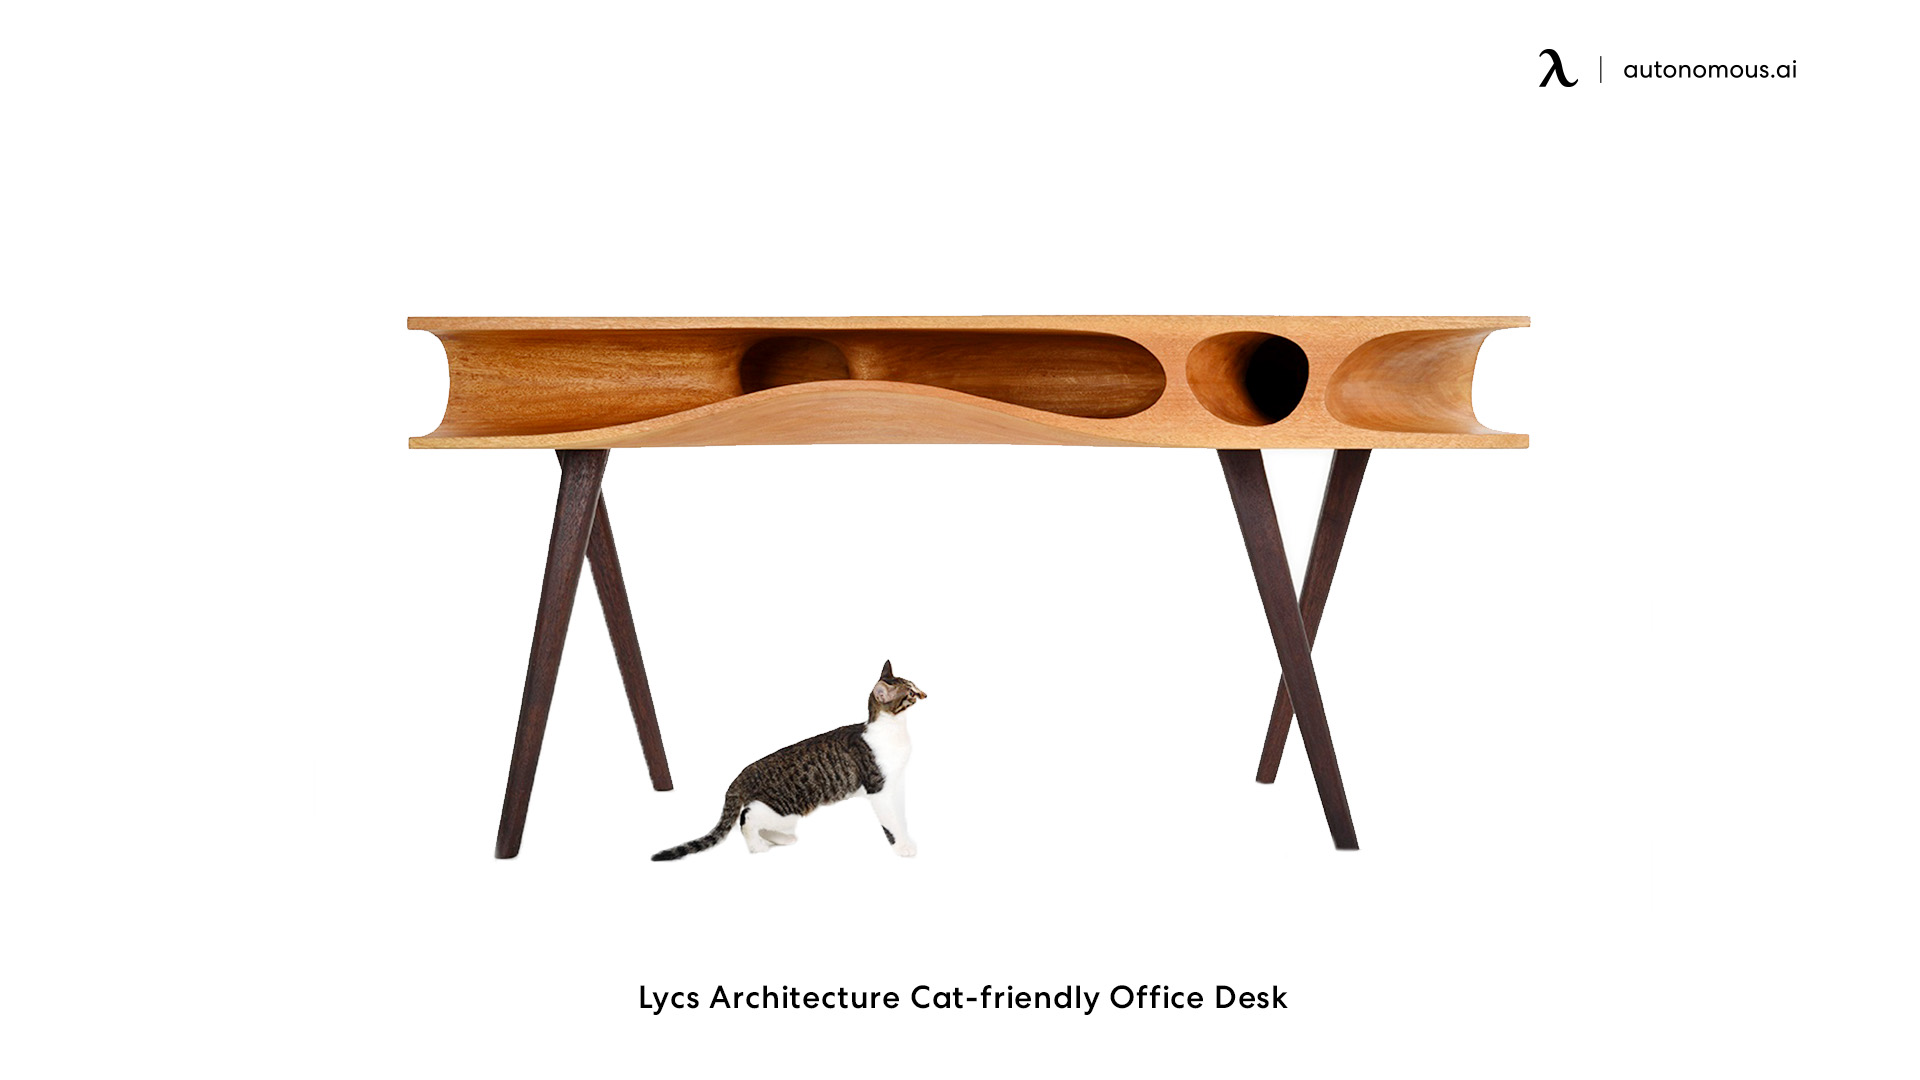 Lycs Architecture Cat-friendly Office Desk